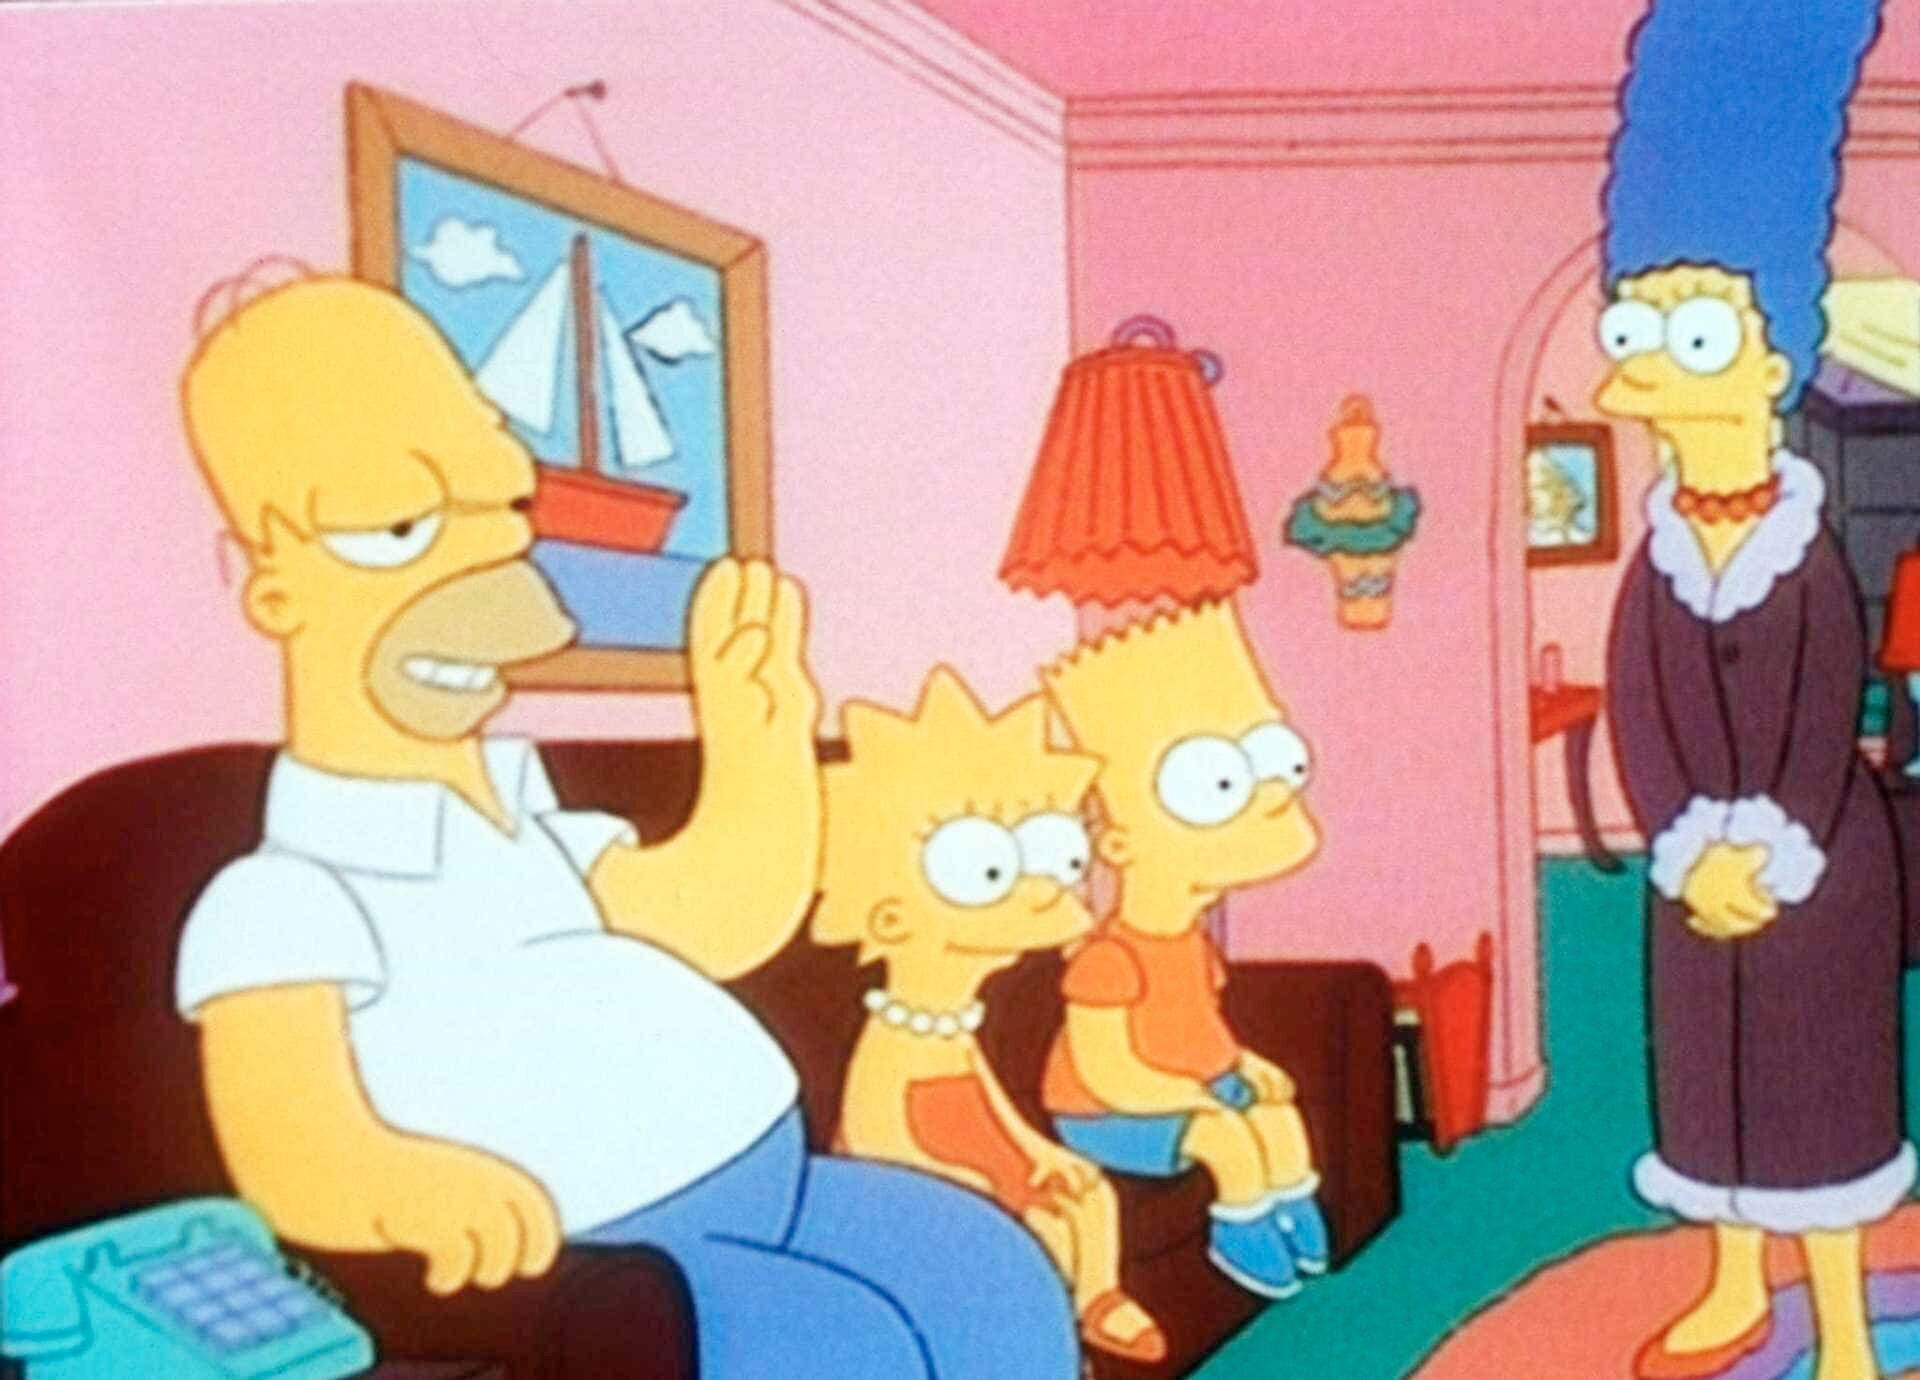 Les Simpson - Saison 4